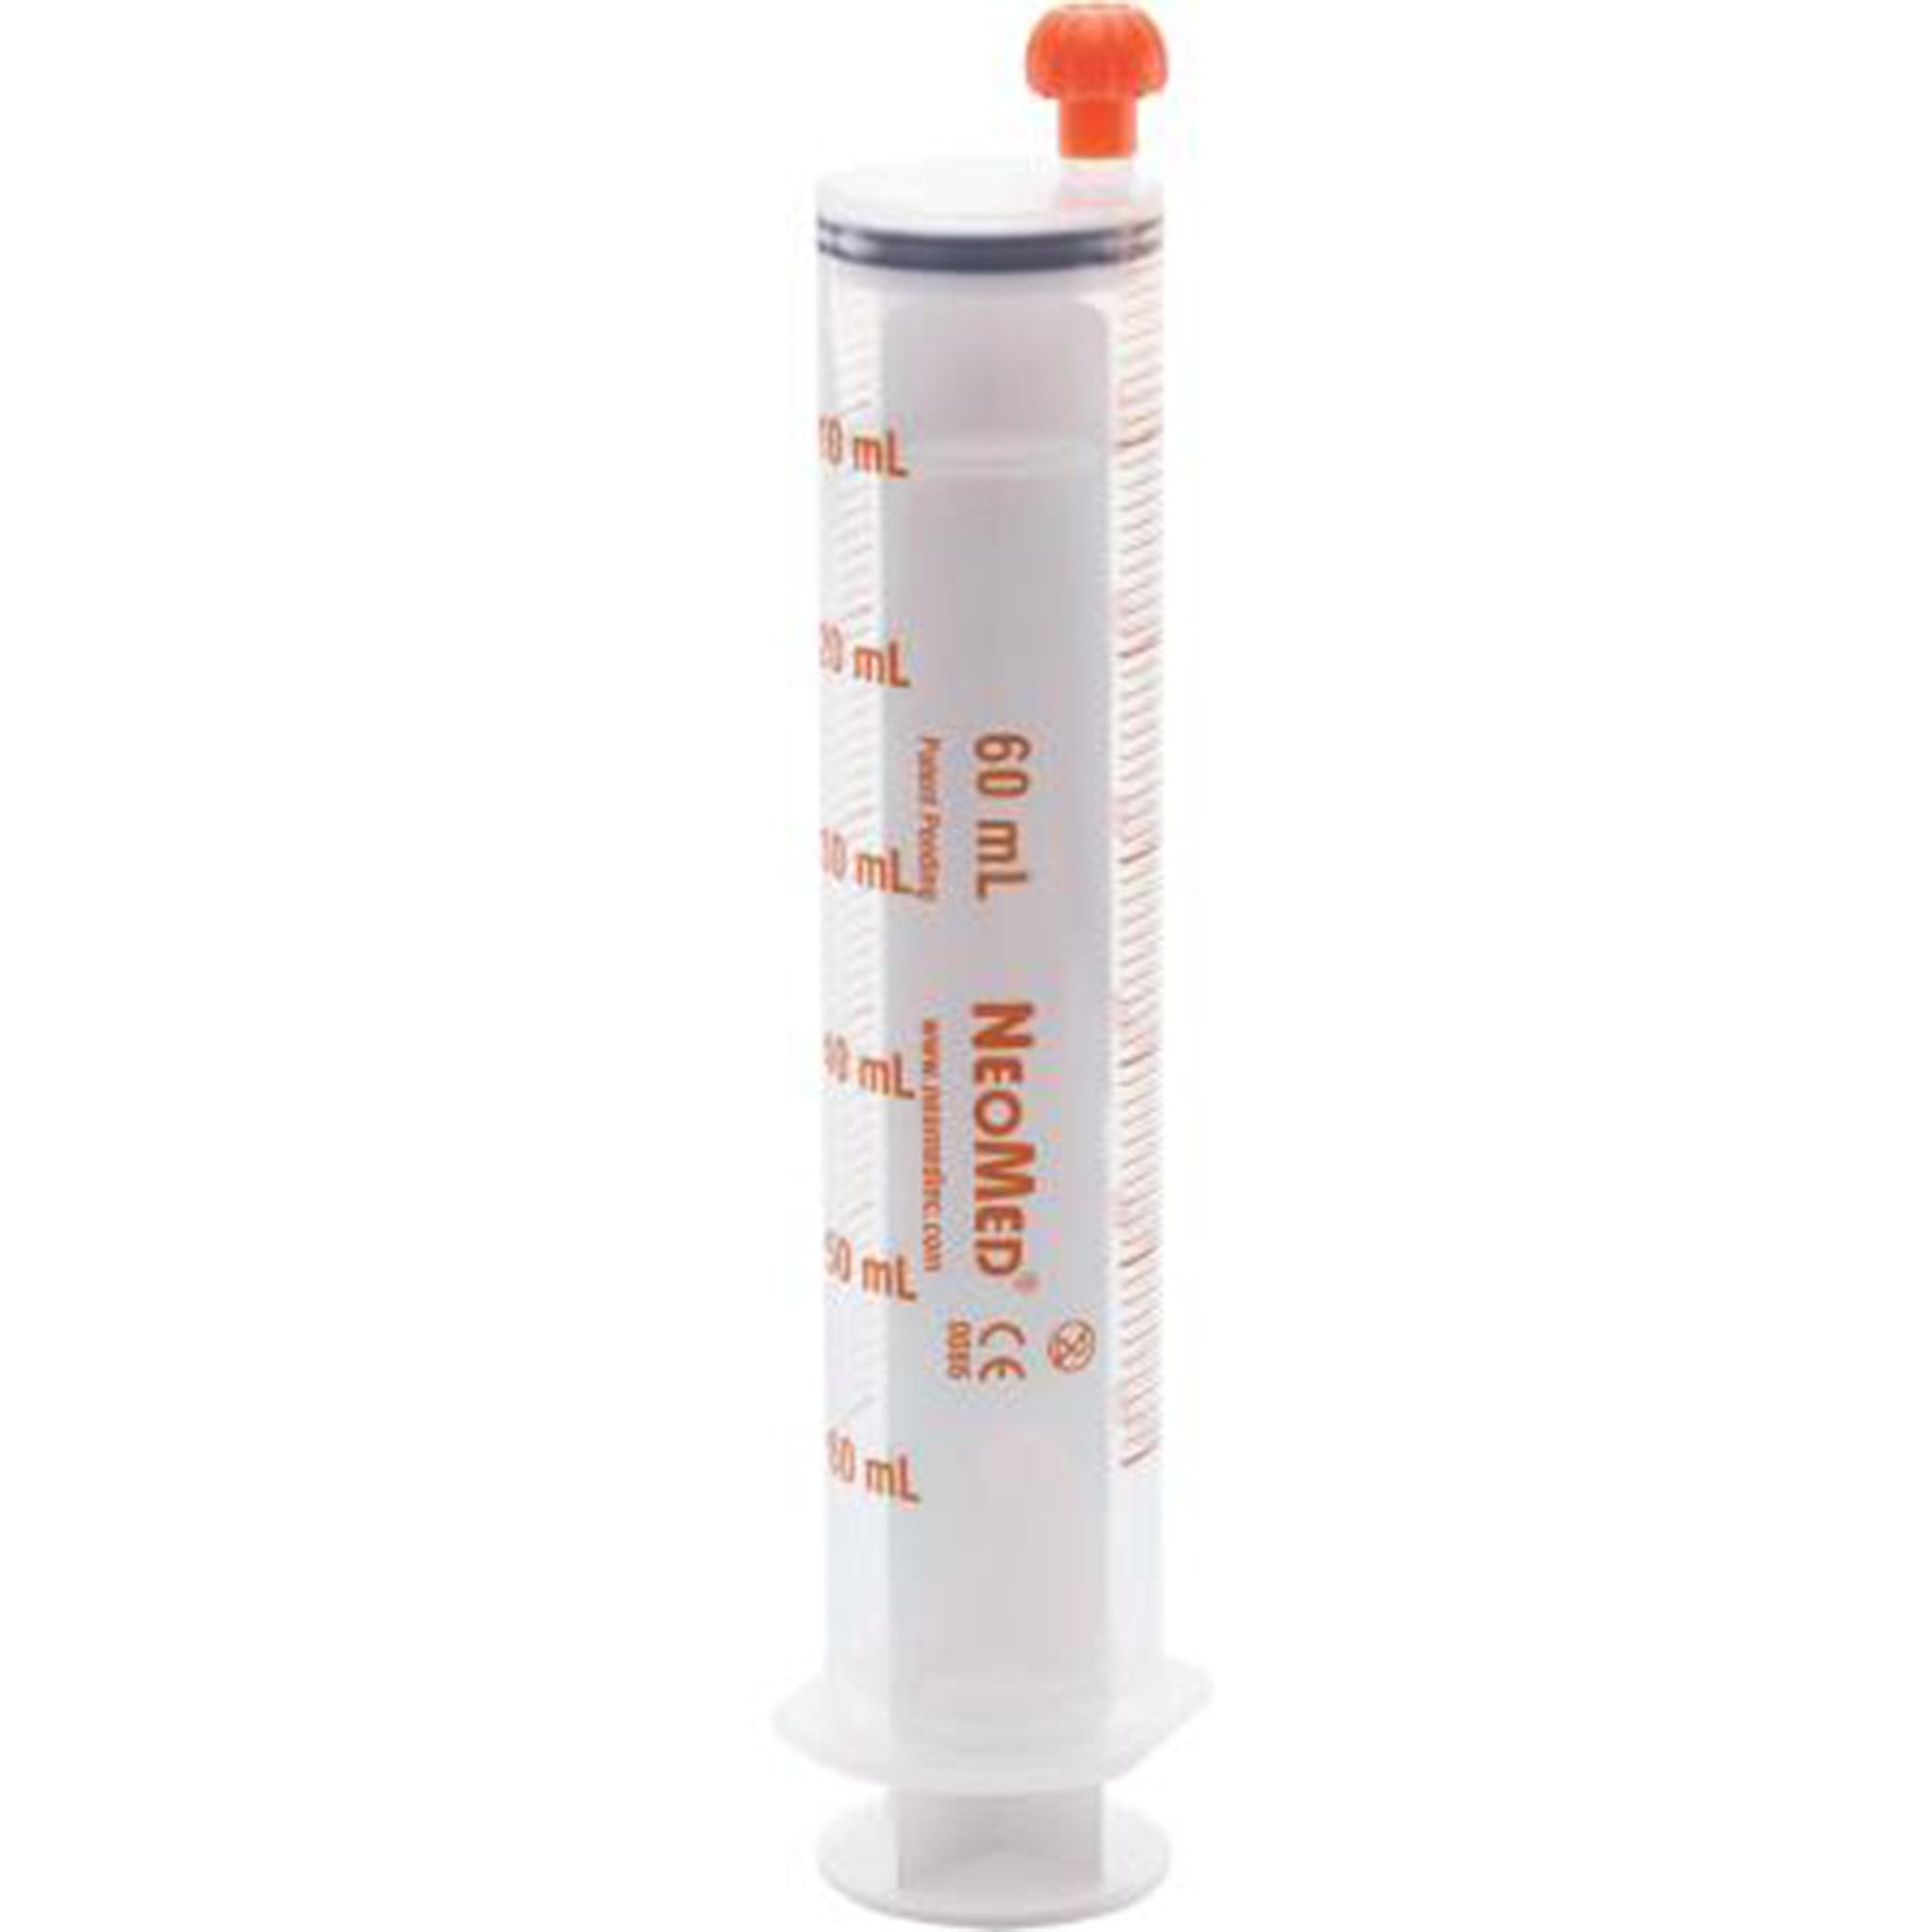 Oral Medication Syringe NeoMed® 60 mL Oral Tip Without Safety